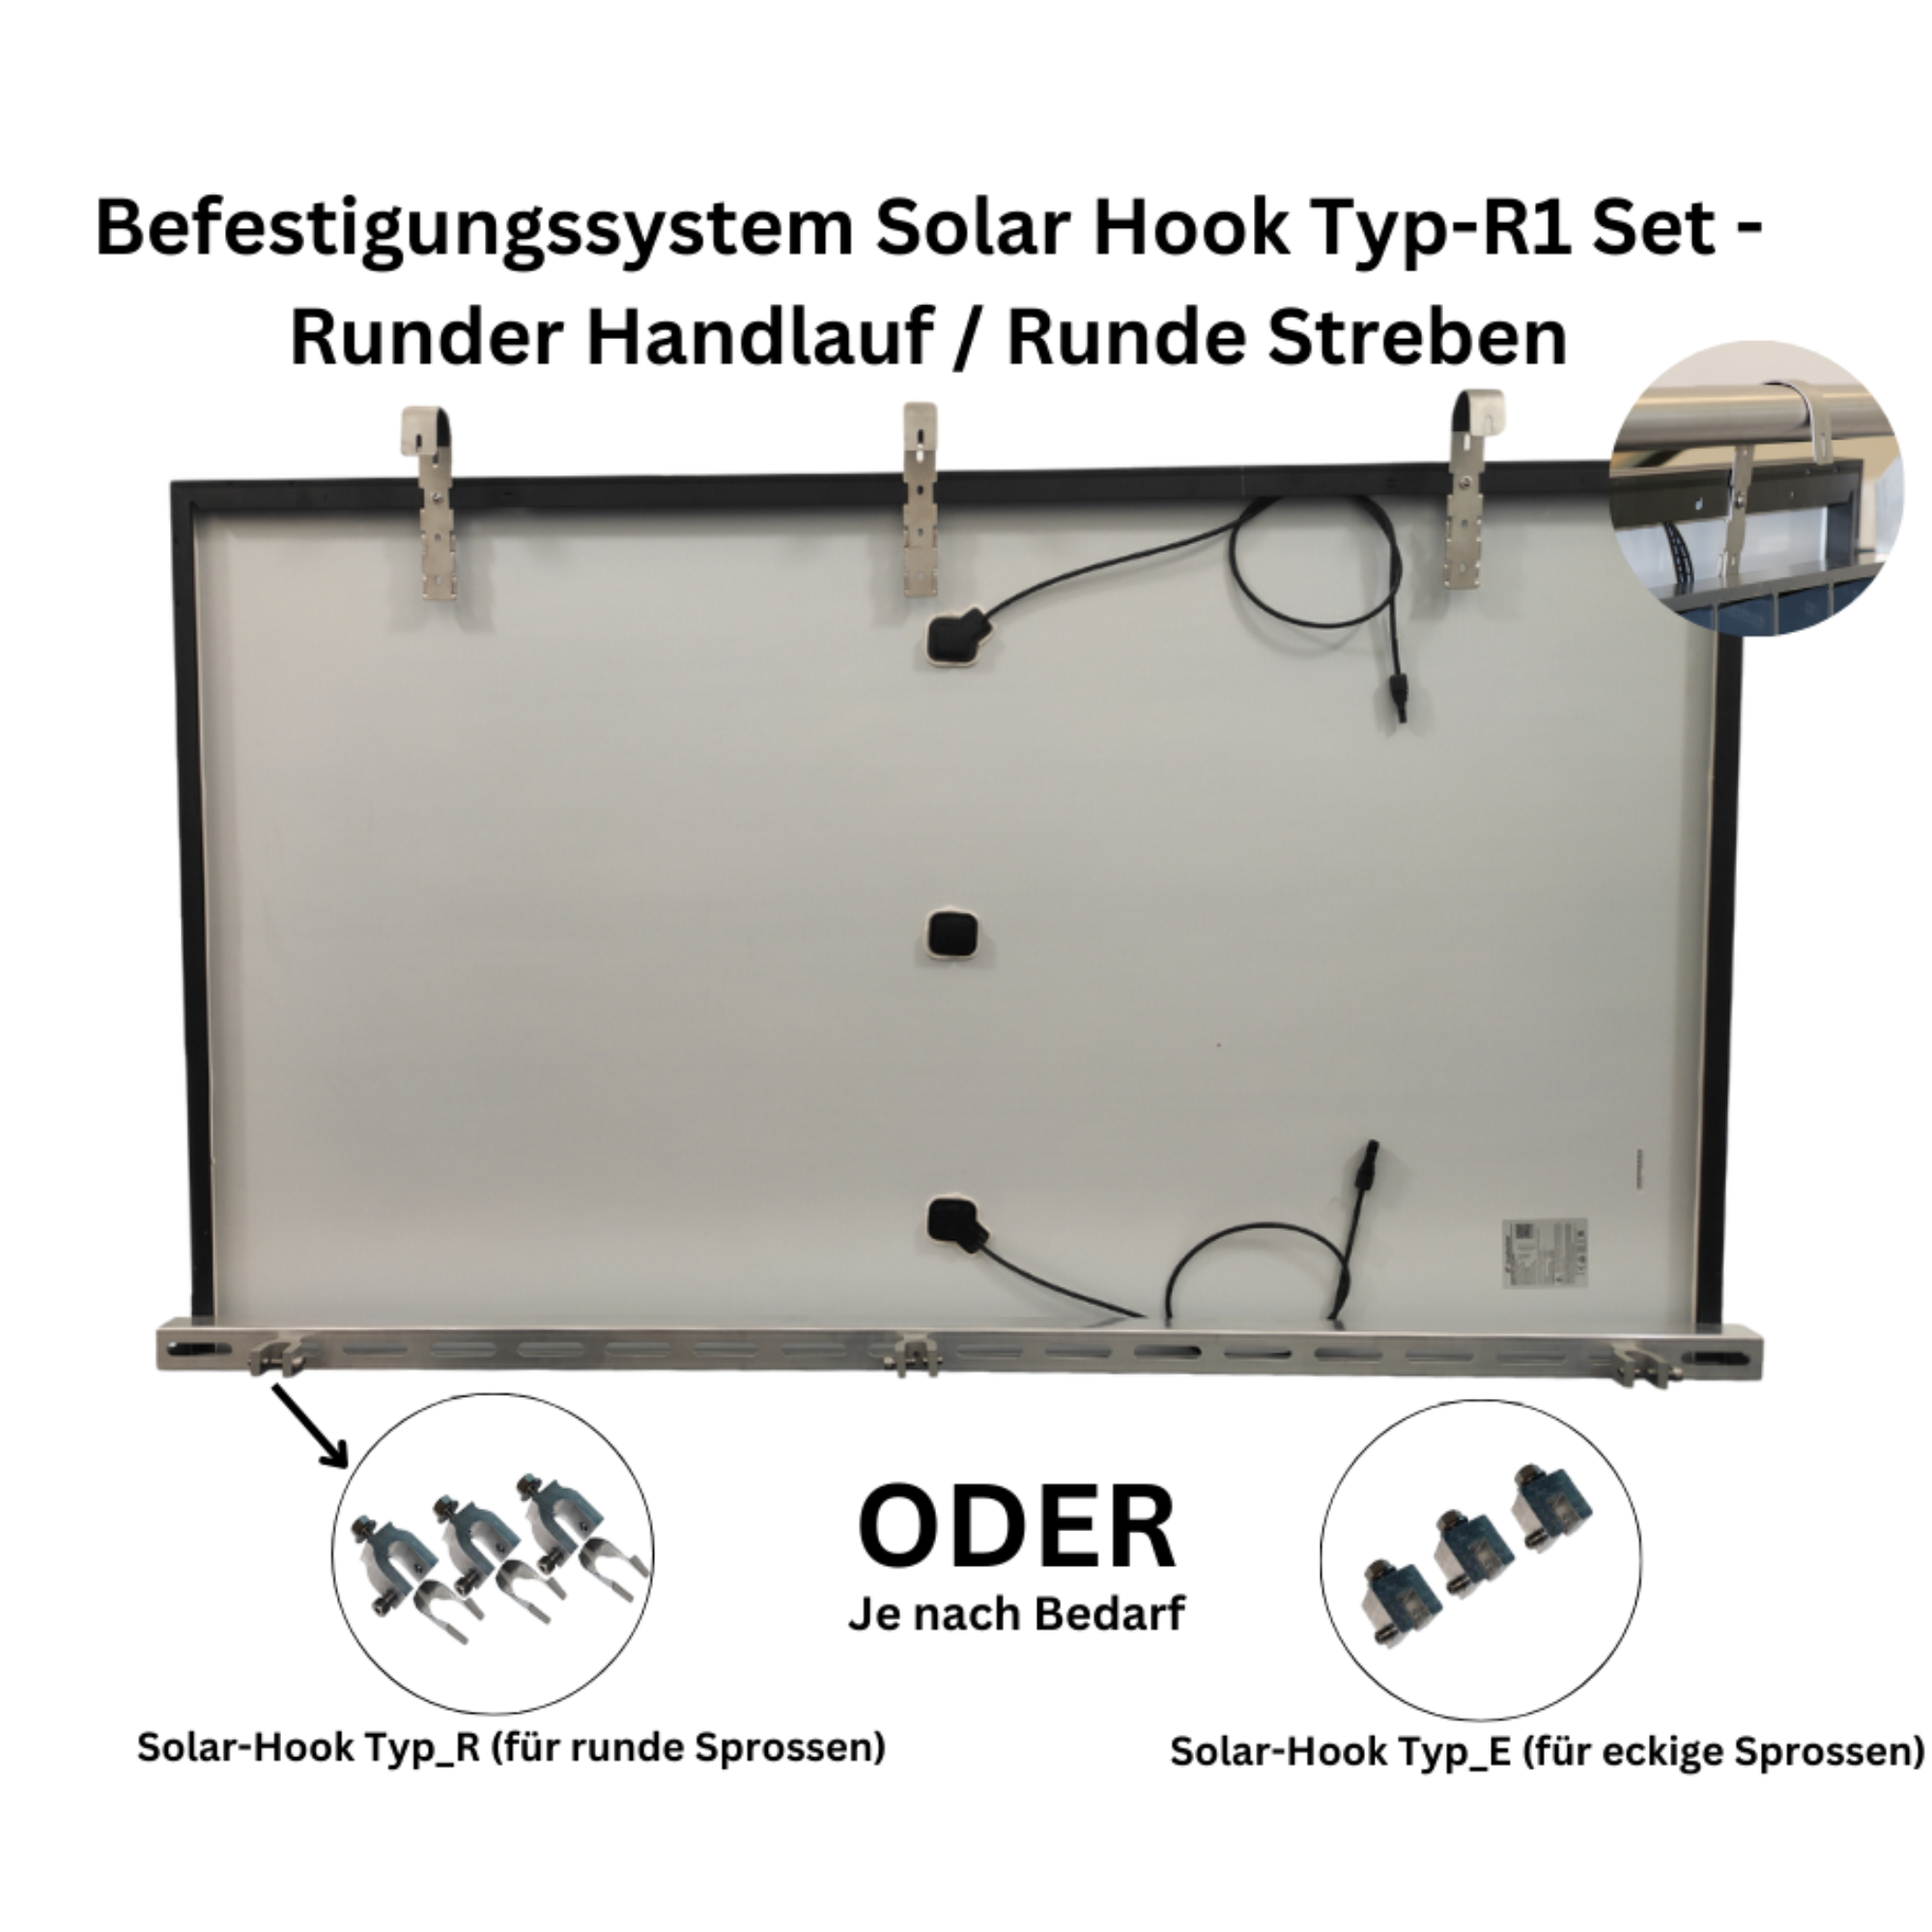 Befestigungssystem Solar Hook Typ-R1 Set-Runder Handlauf / Runde Streben